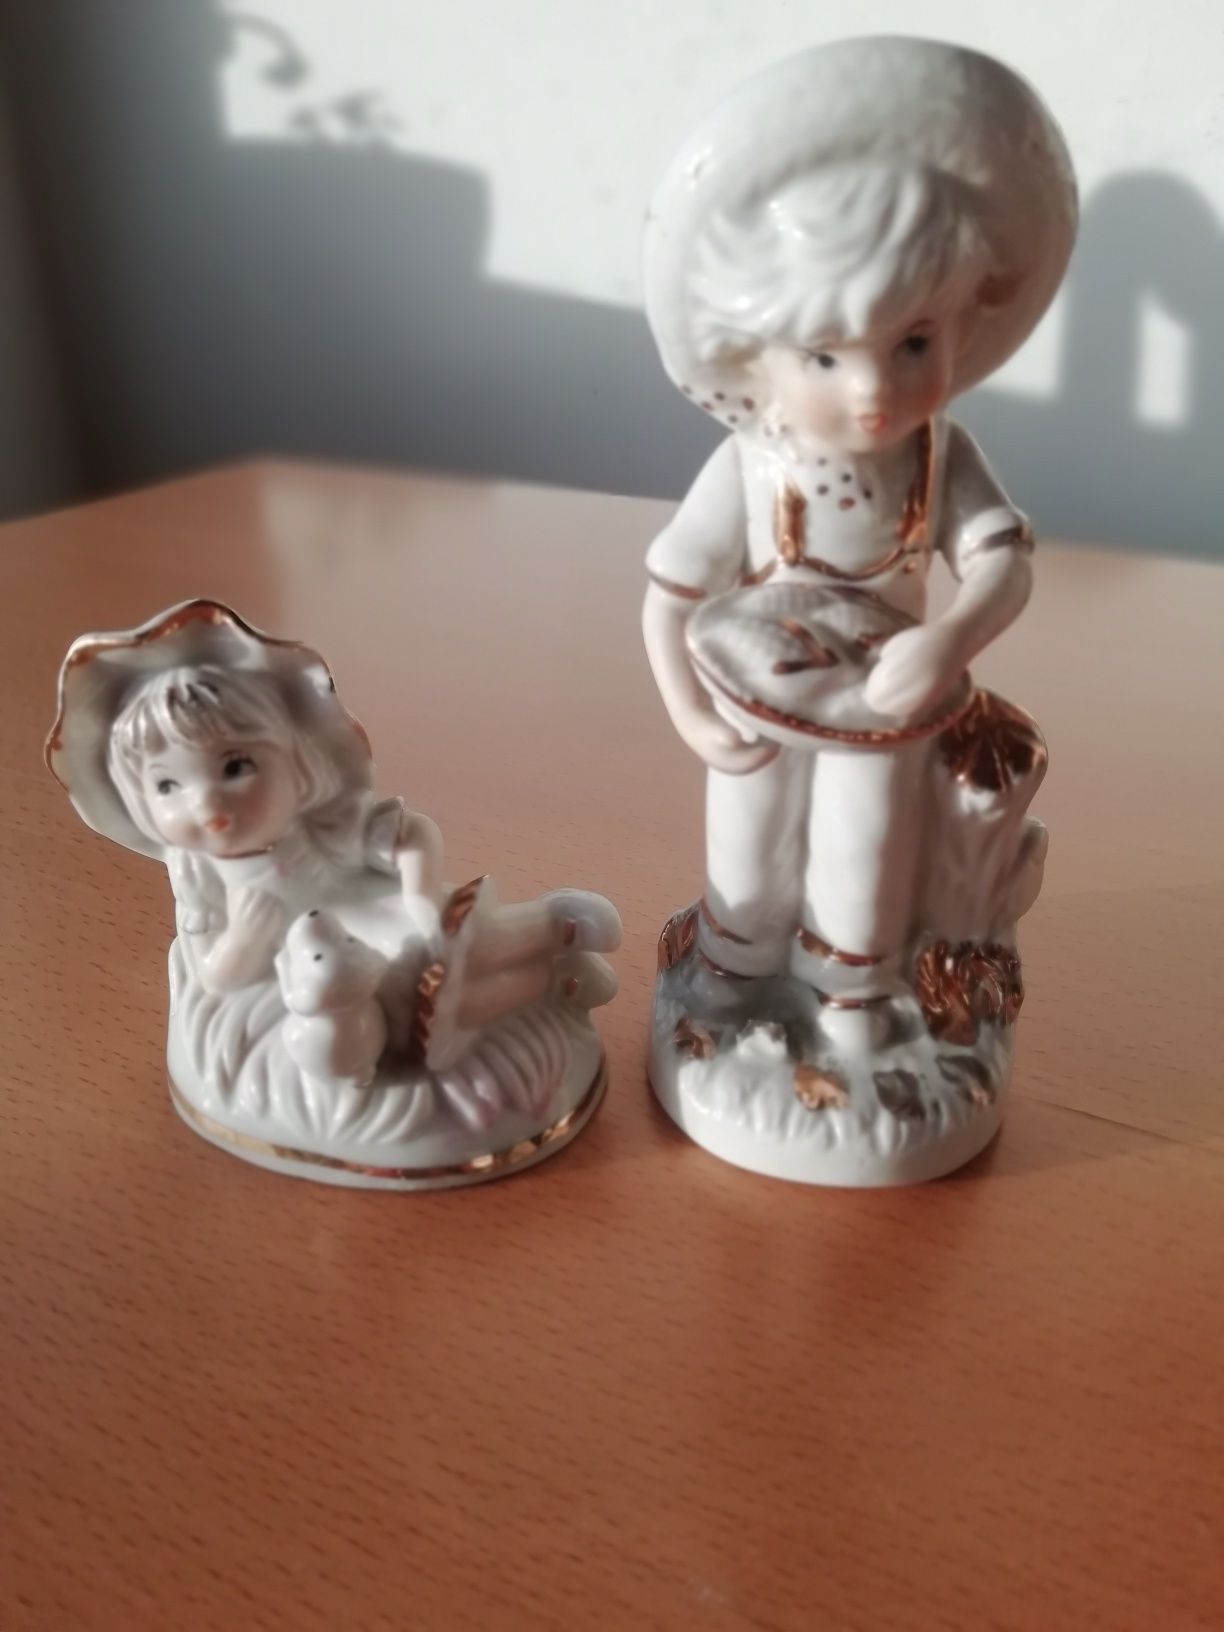 Pequenos bonecos em porcelana.